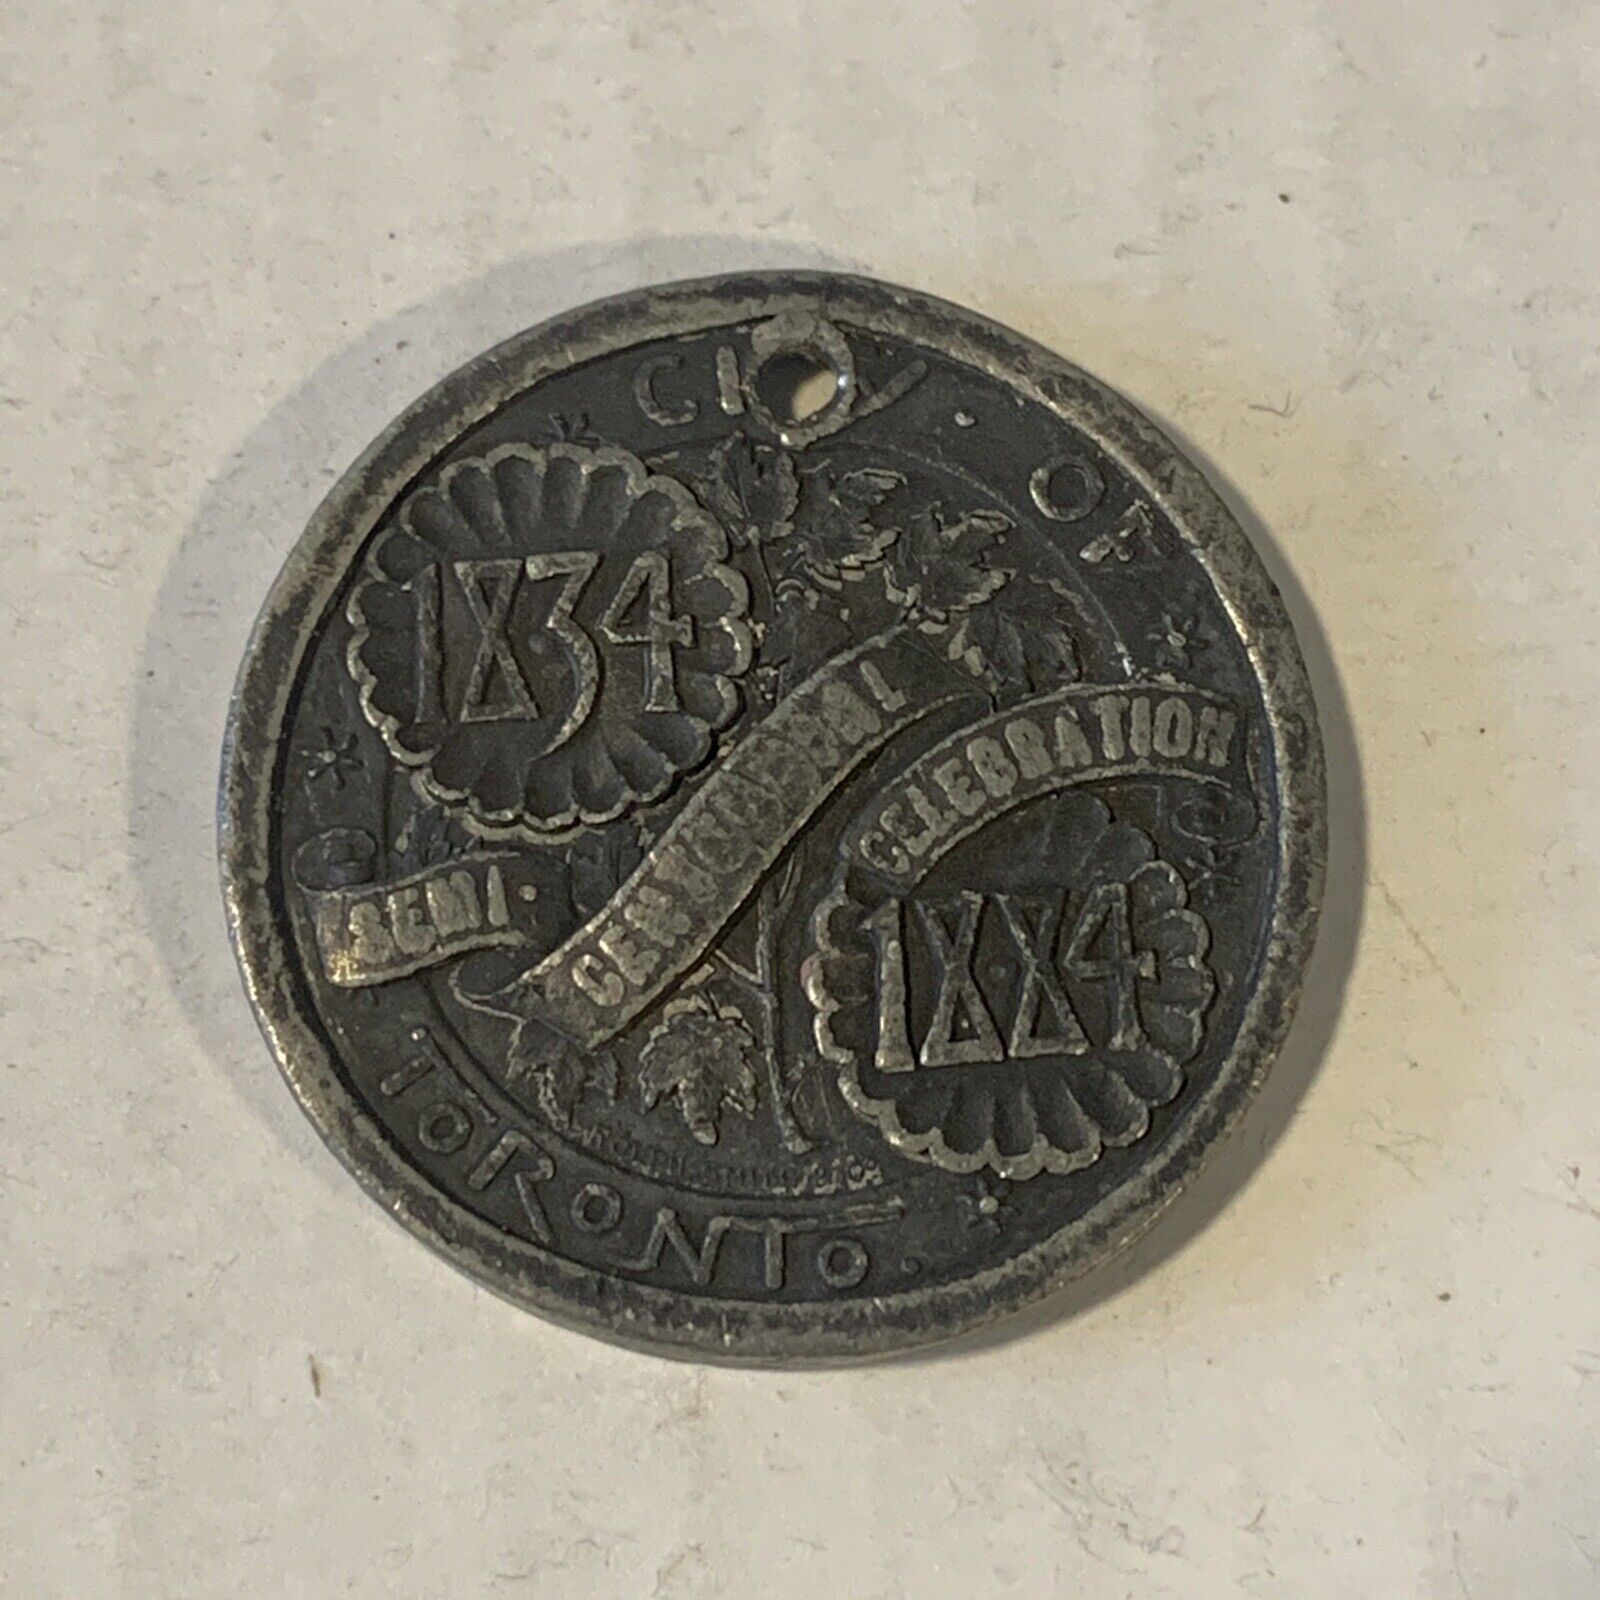 1883 1884 Toronto Semi Centennial Coin